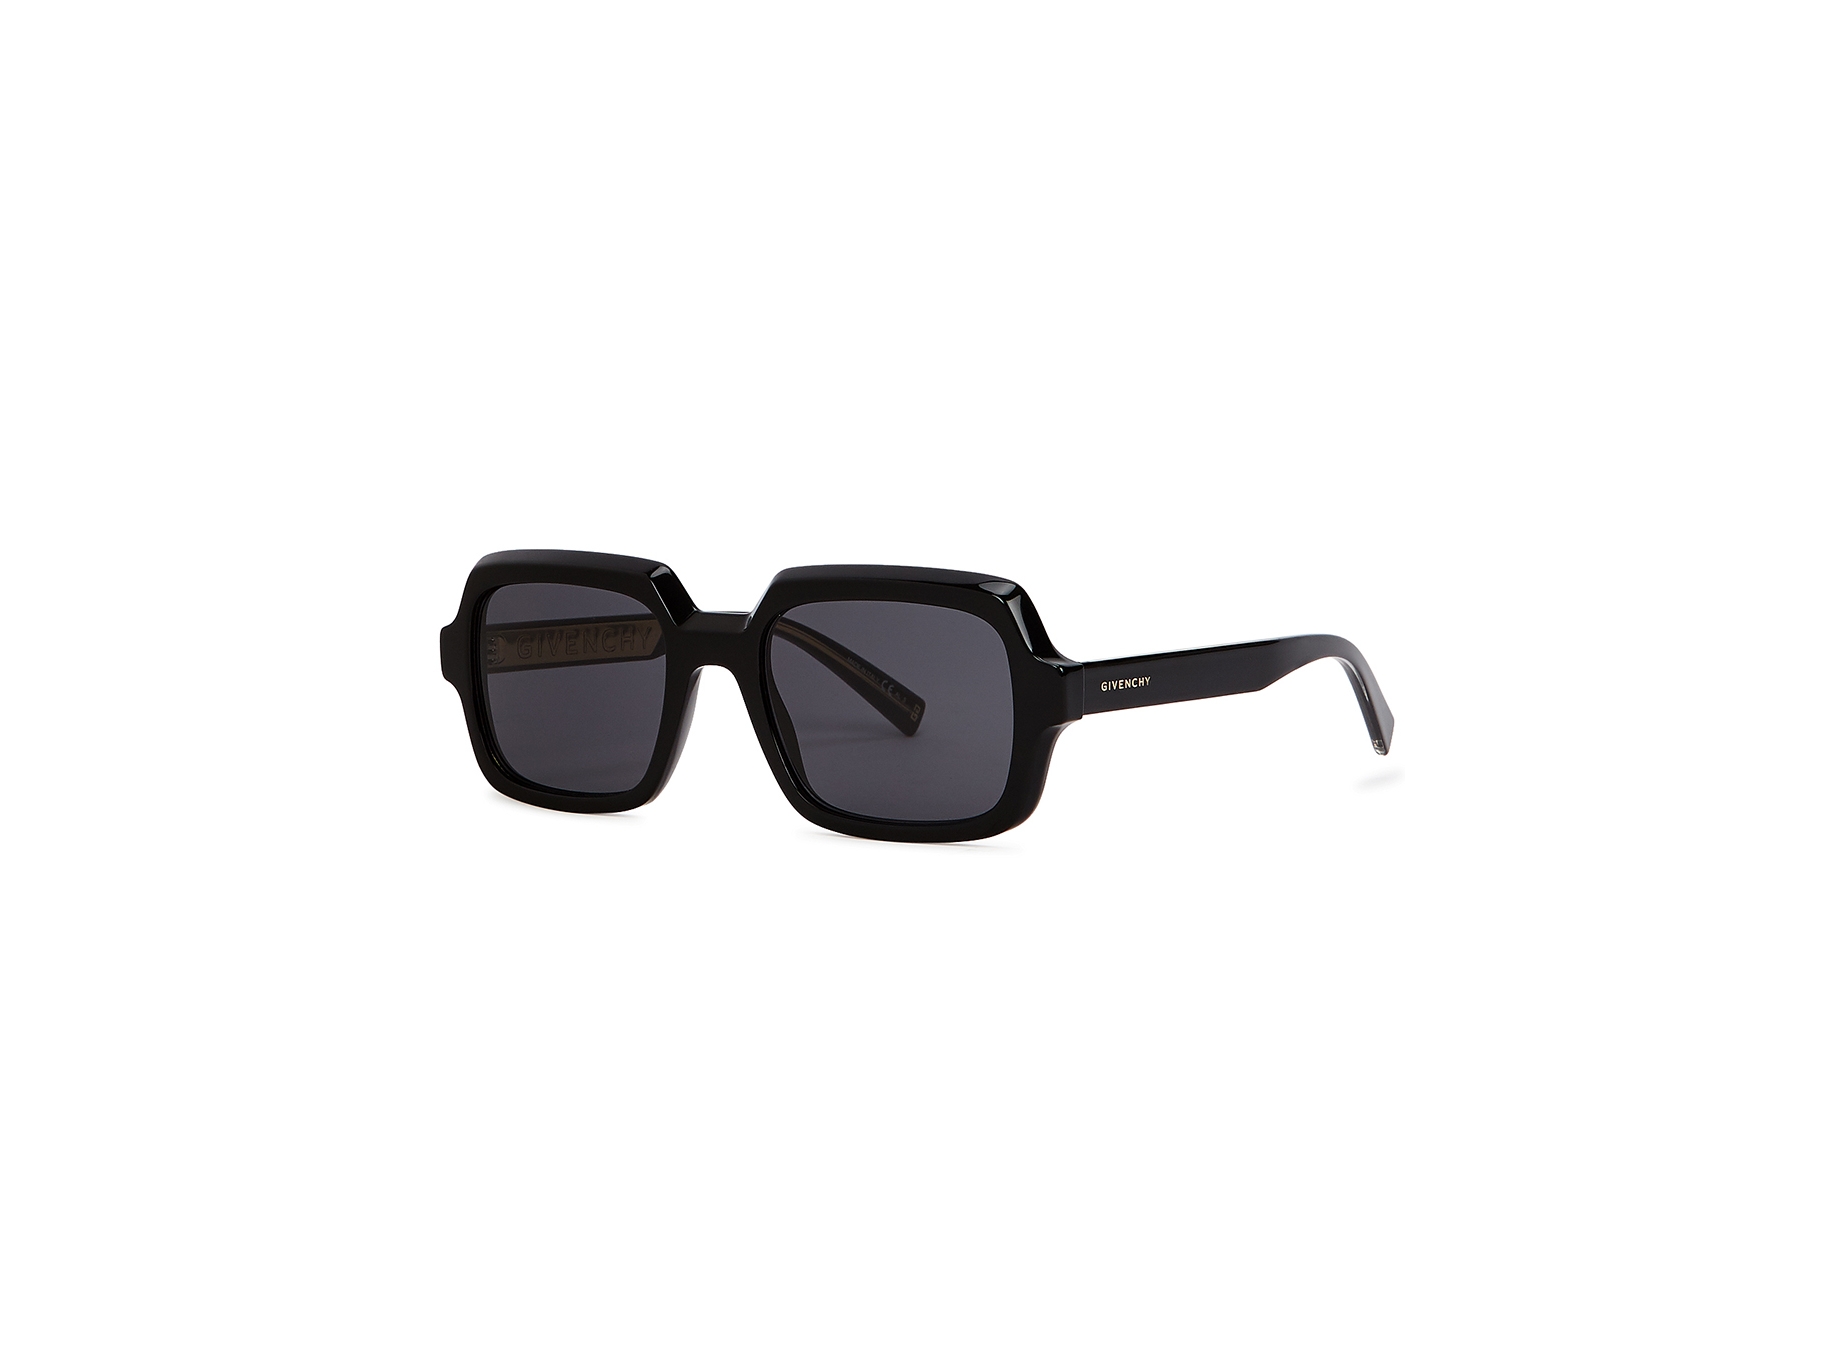 Givenchy Black oversized sunglasses - Harvey Nichols